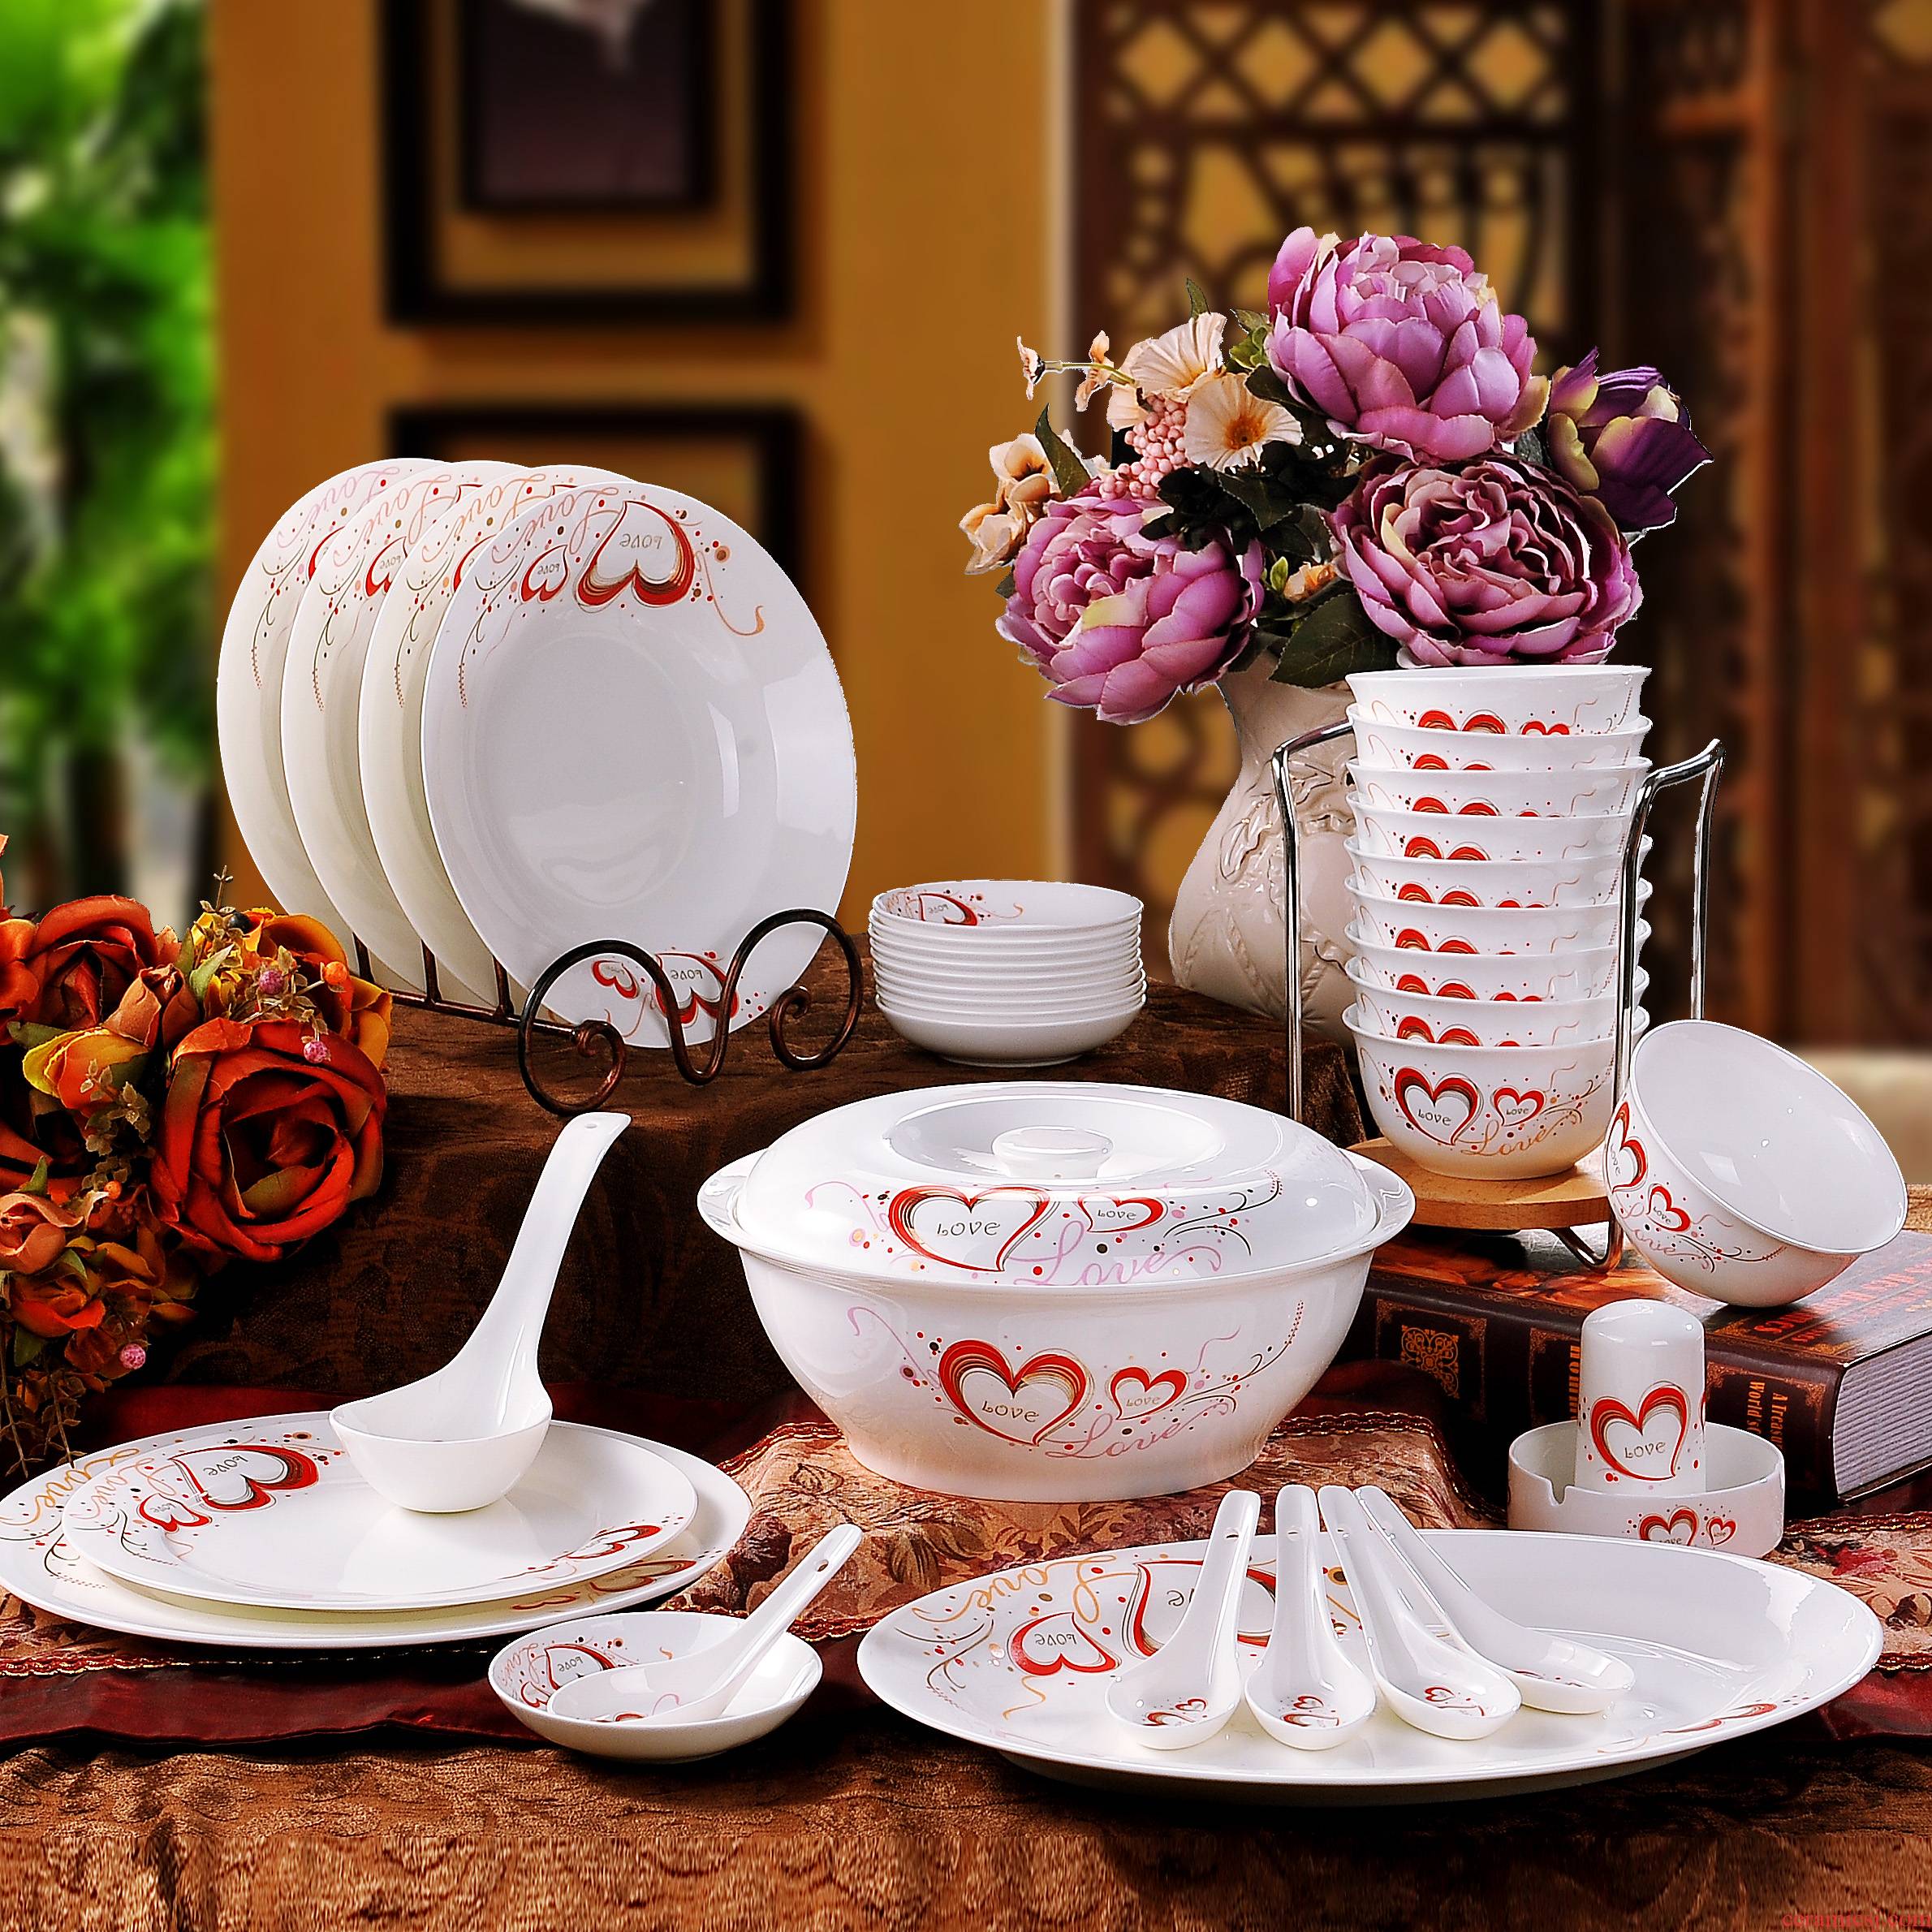 56 the head jingdezhen romantic ipads porcelain tableware suit pottery and porcelain bowl dishes suit 1638 - YGCQ